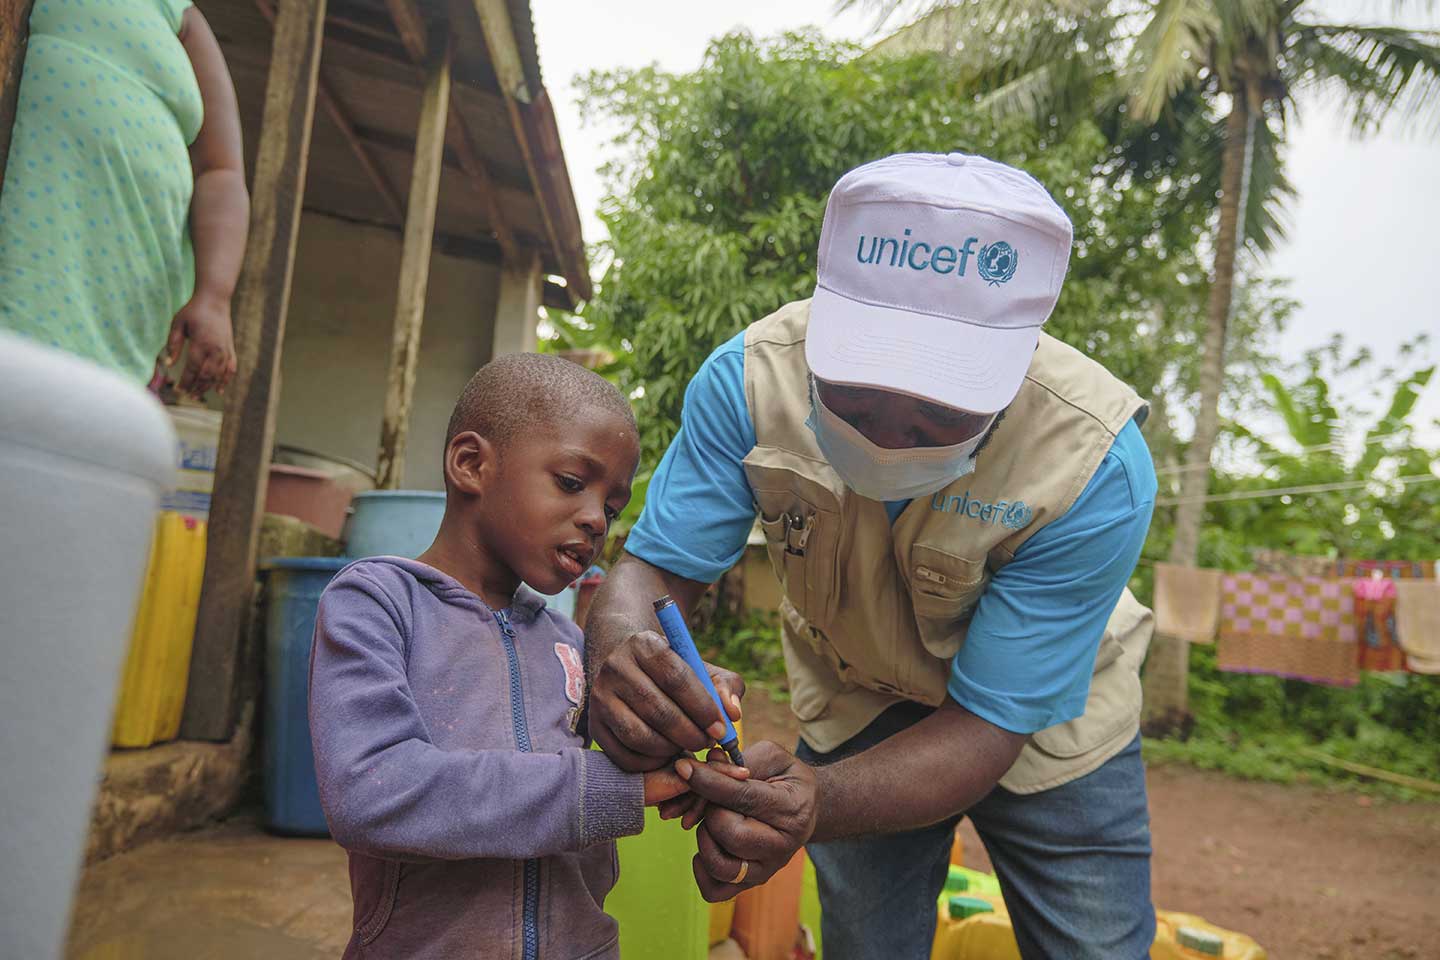 Spécialiste de la santé à l'UNICEF, Felix Osei-Sarpong, marque le doigt d'un enfant qui vient de recevoir le vaccin contre la polio à Kitase, dans la région de l'Est, le 10 octobre 2020. ©UNICEF/ANNANKRA